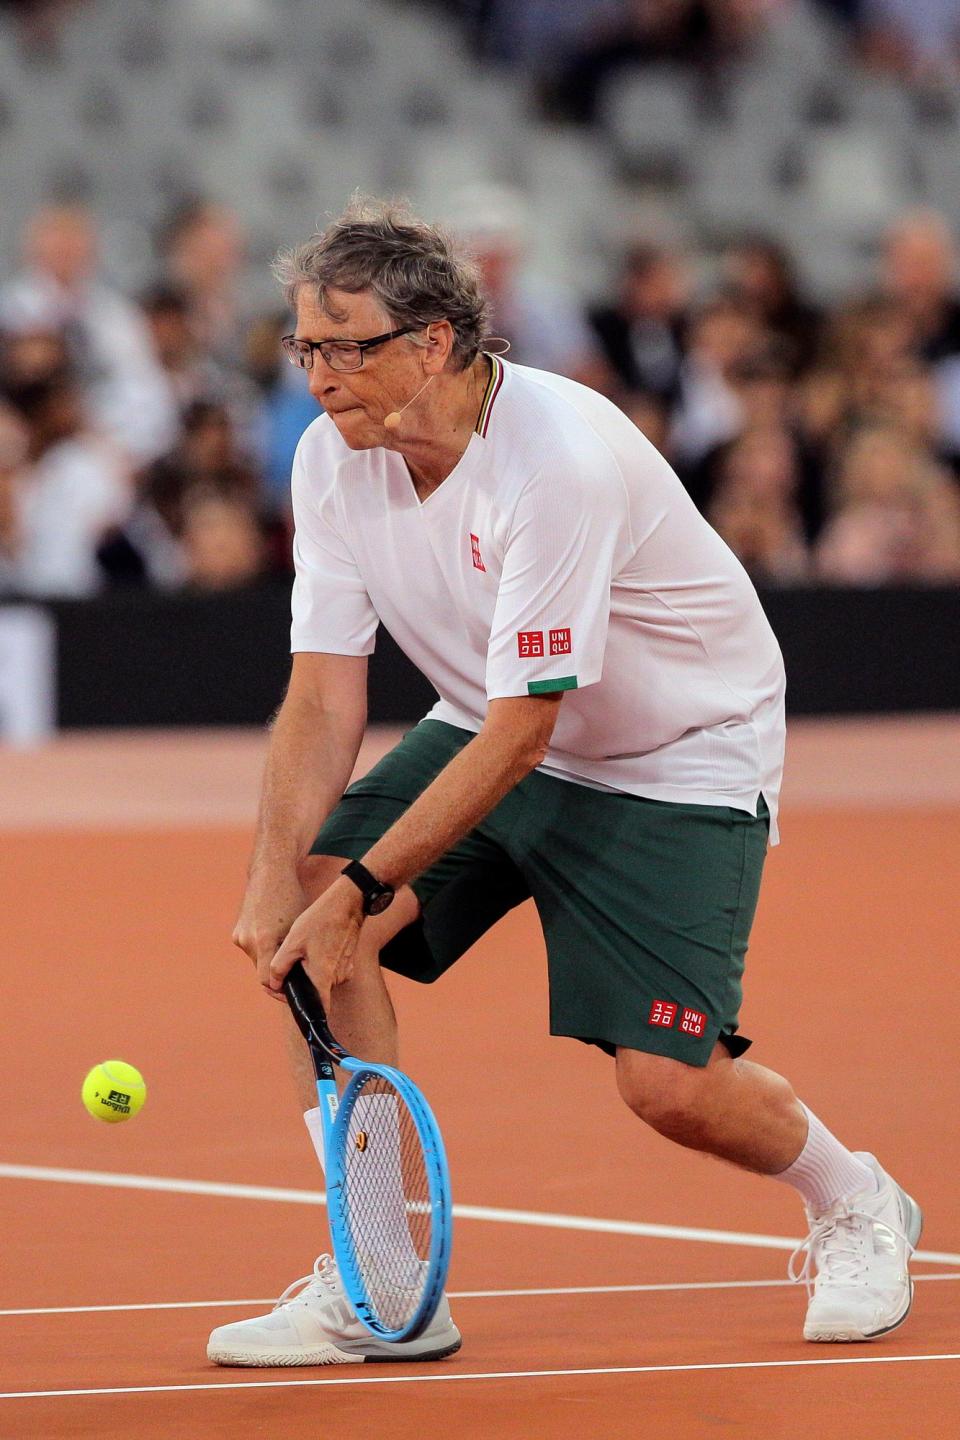 Microsoft-Gründer Bill Gates beim Tennis spielen. - Copyright: picture alliance / ASSOCIATED PRESS | Halden Krog